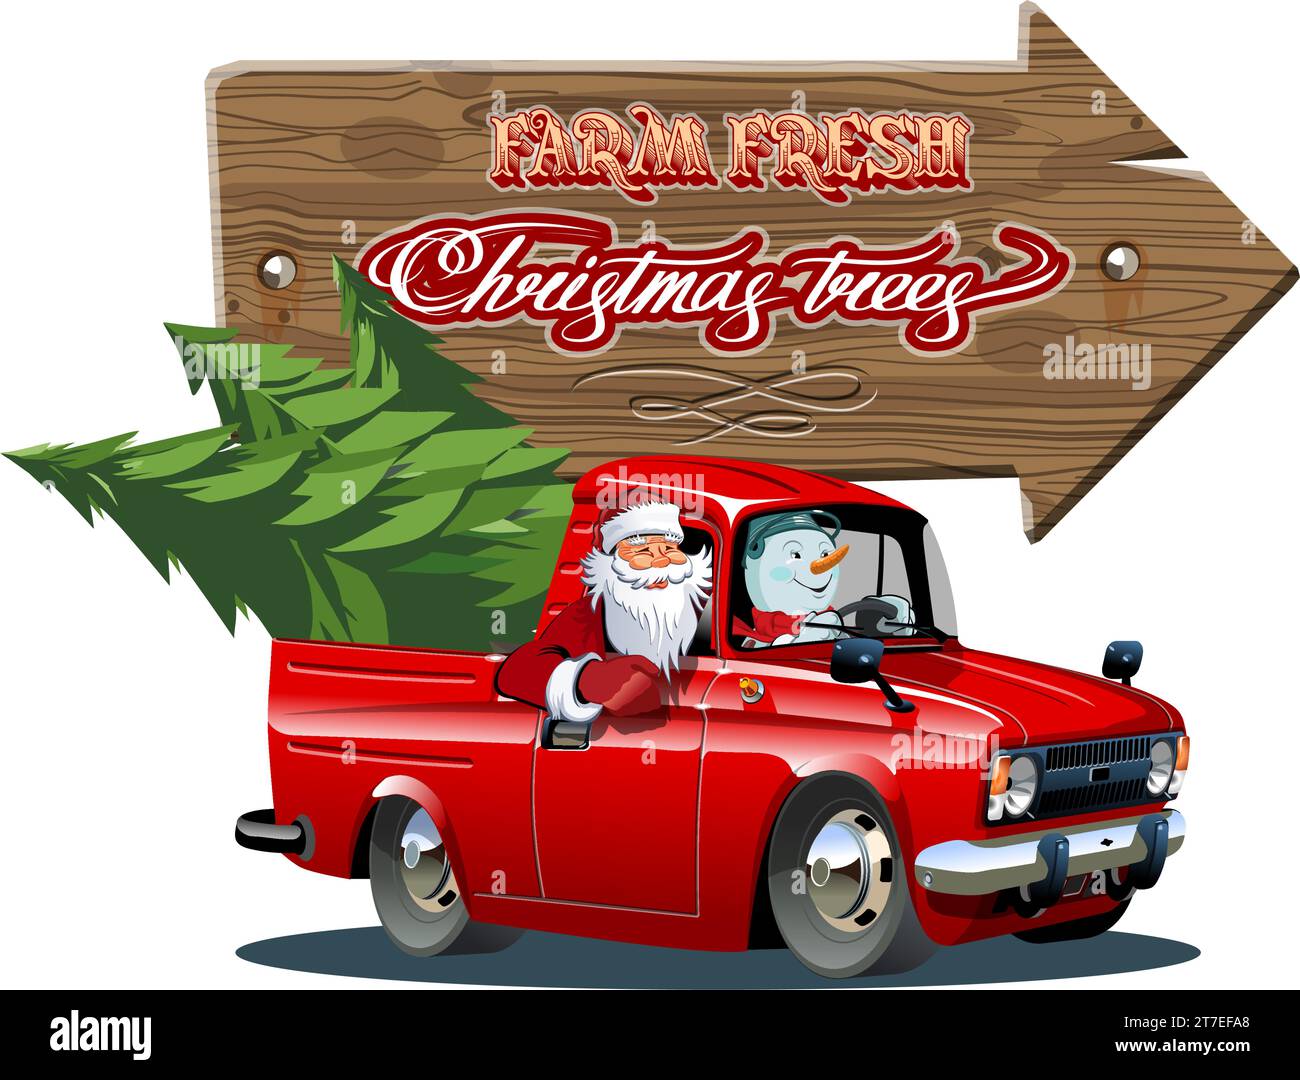 Vektor-Vintage-Bauernhof-Schild mit Weihnachtsbaum von rotem Truck. Farm Fresh Christmas Trees Retro-Poster. Verfügbar im eps-10-Format, getrennt durch Gruppen und la Stock Vektor